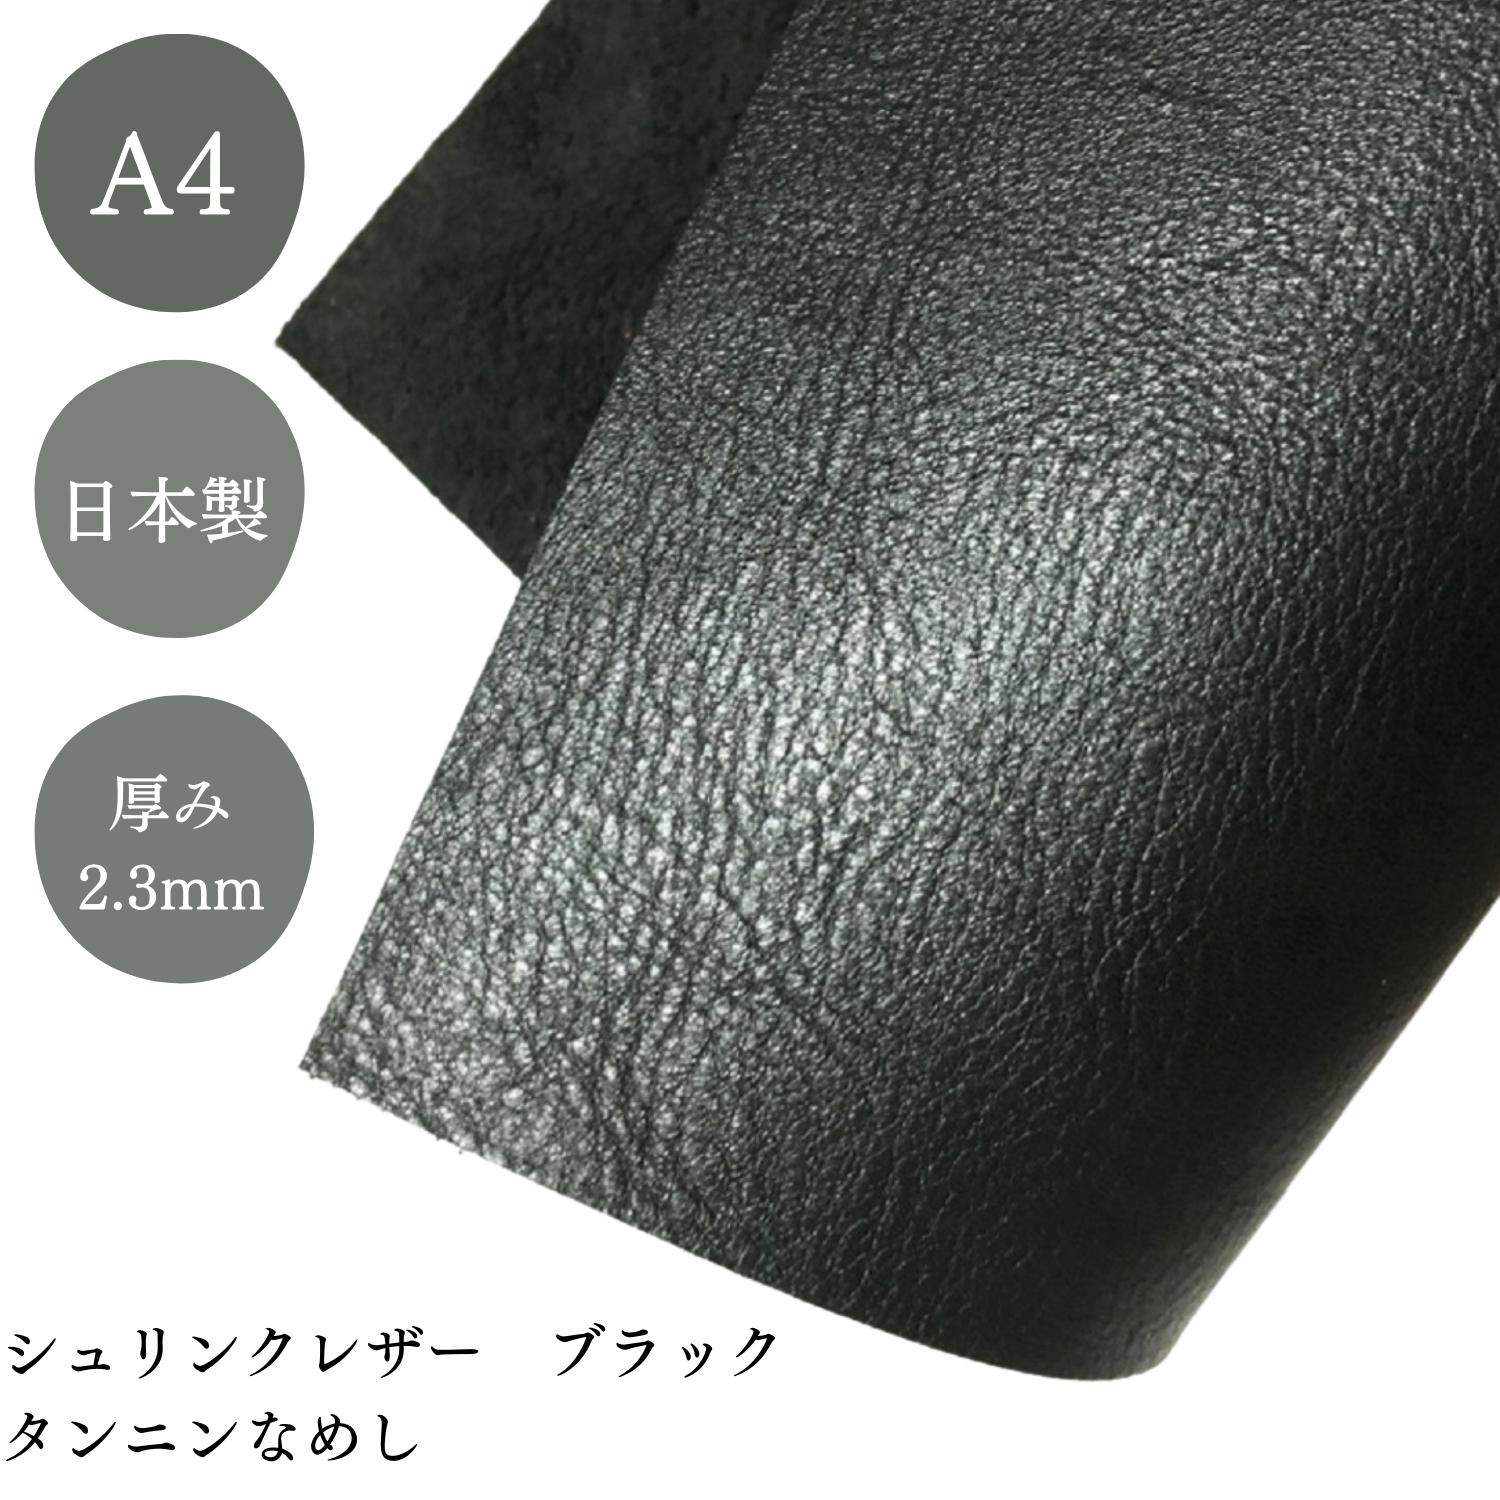 レザークラフト 革 ヌメ革 皮革 日本産 牛革 シュリンク 植物 タンニンなめし レザー 厚さ 2.3mm 6デシ 約A4サイズ ブラック 約20cm×30cm